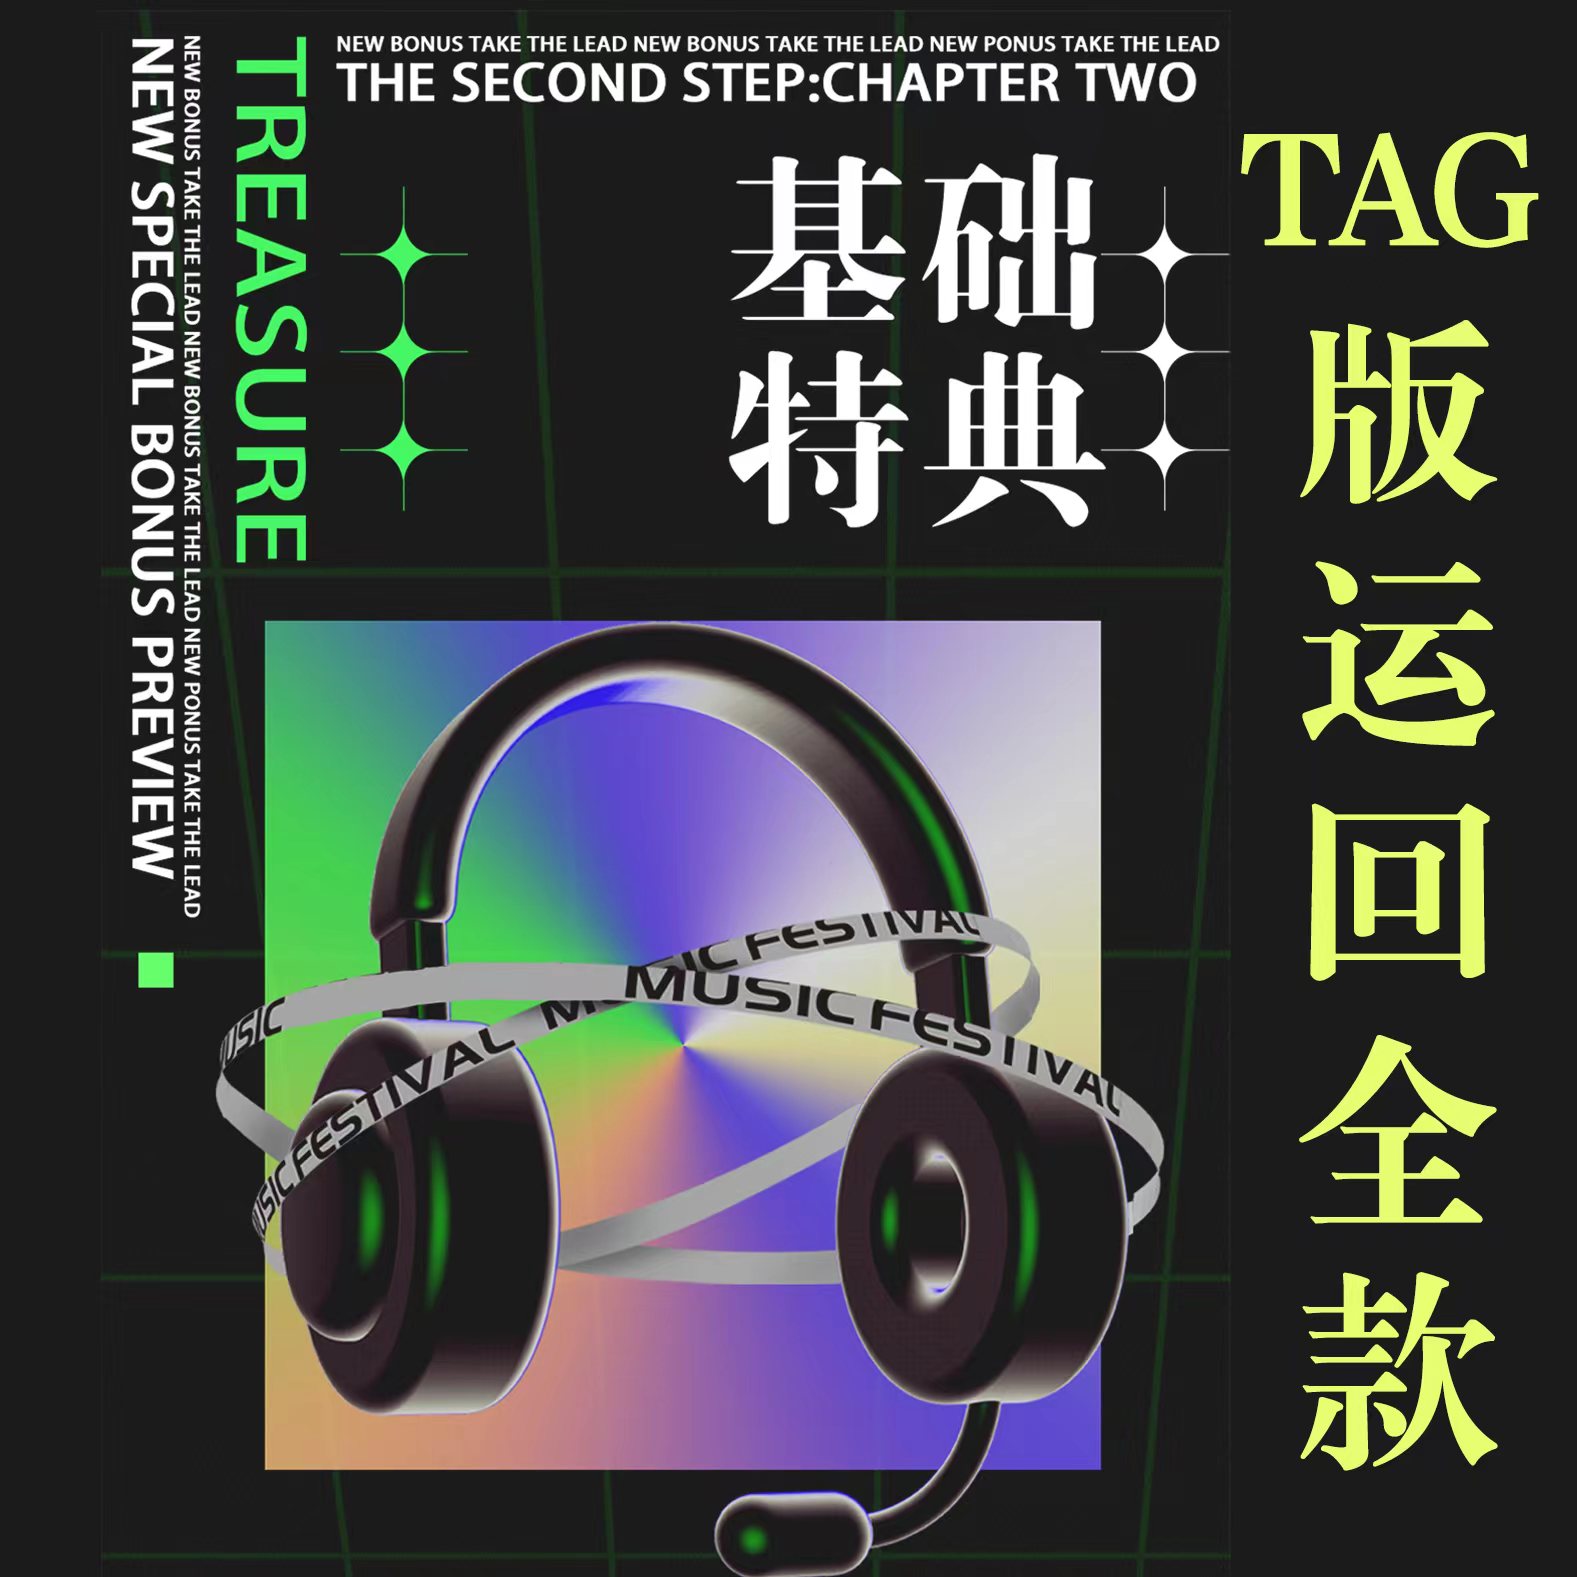 [全款 基础特典专][Ktown4u Special Gift] TREASURE - 2nd MINI ALBUM [THE SECOND STEP : CHAPTER TWO] YG TAG ALBUM (随机版本)_TREASURE盒首